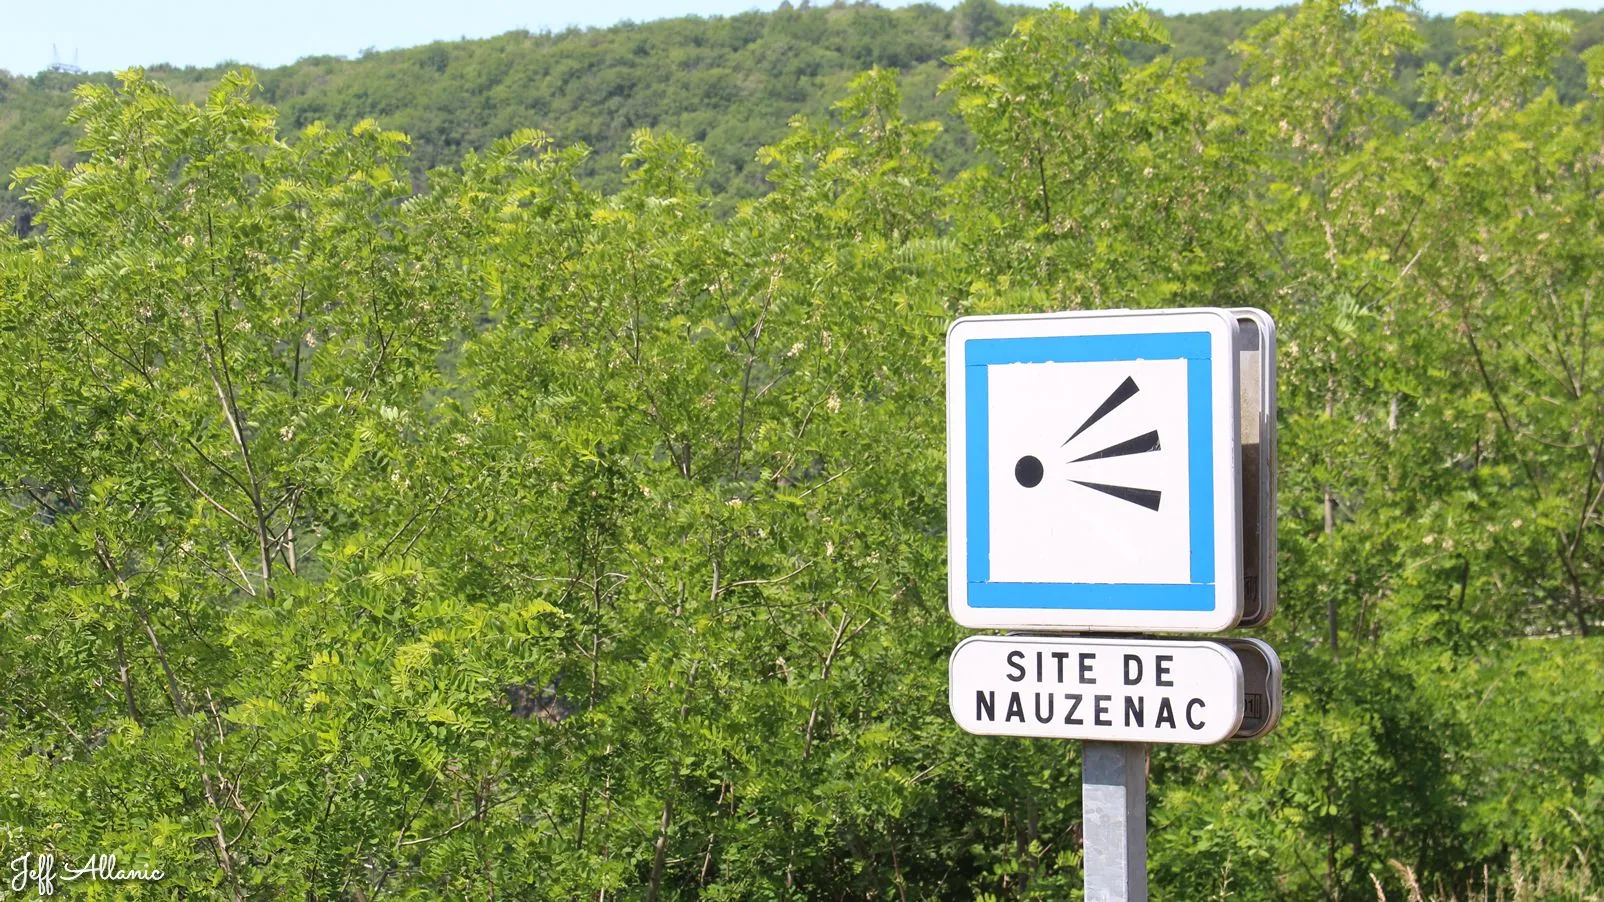 Corrèze découverte - Photo N° 1 - Panorama du site de Nauzenac - 19550 - Soursac - Panoramas & Grands espaces - Quelques pas - Autour de vous